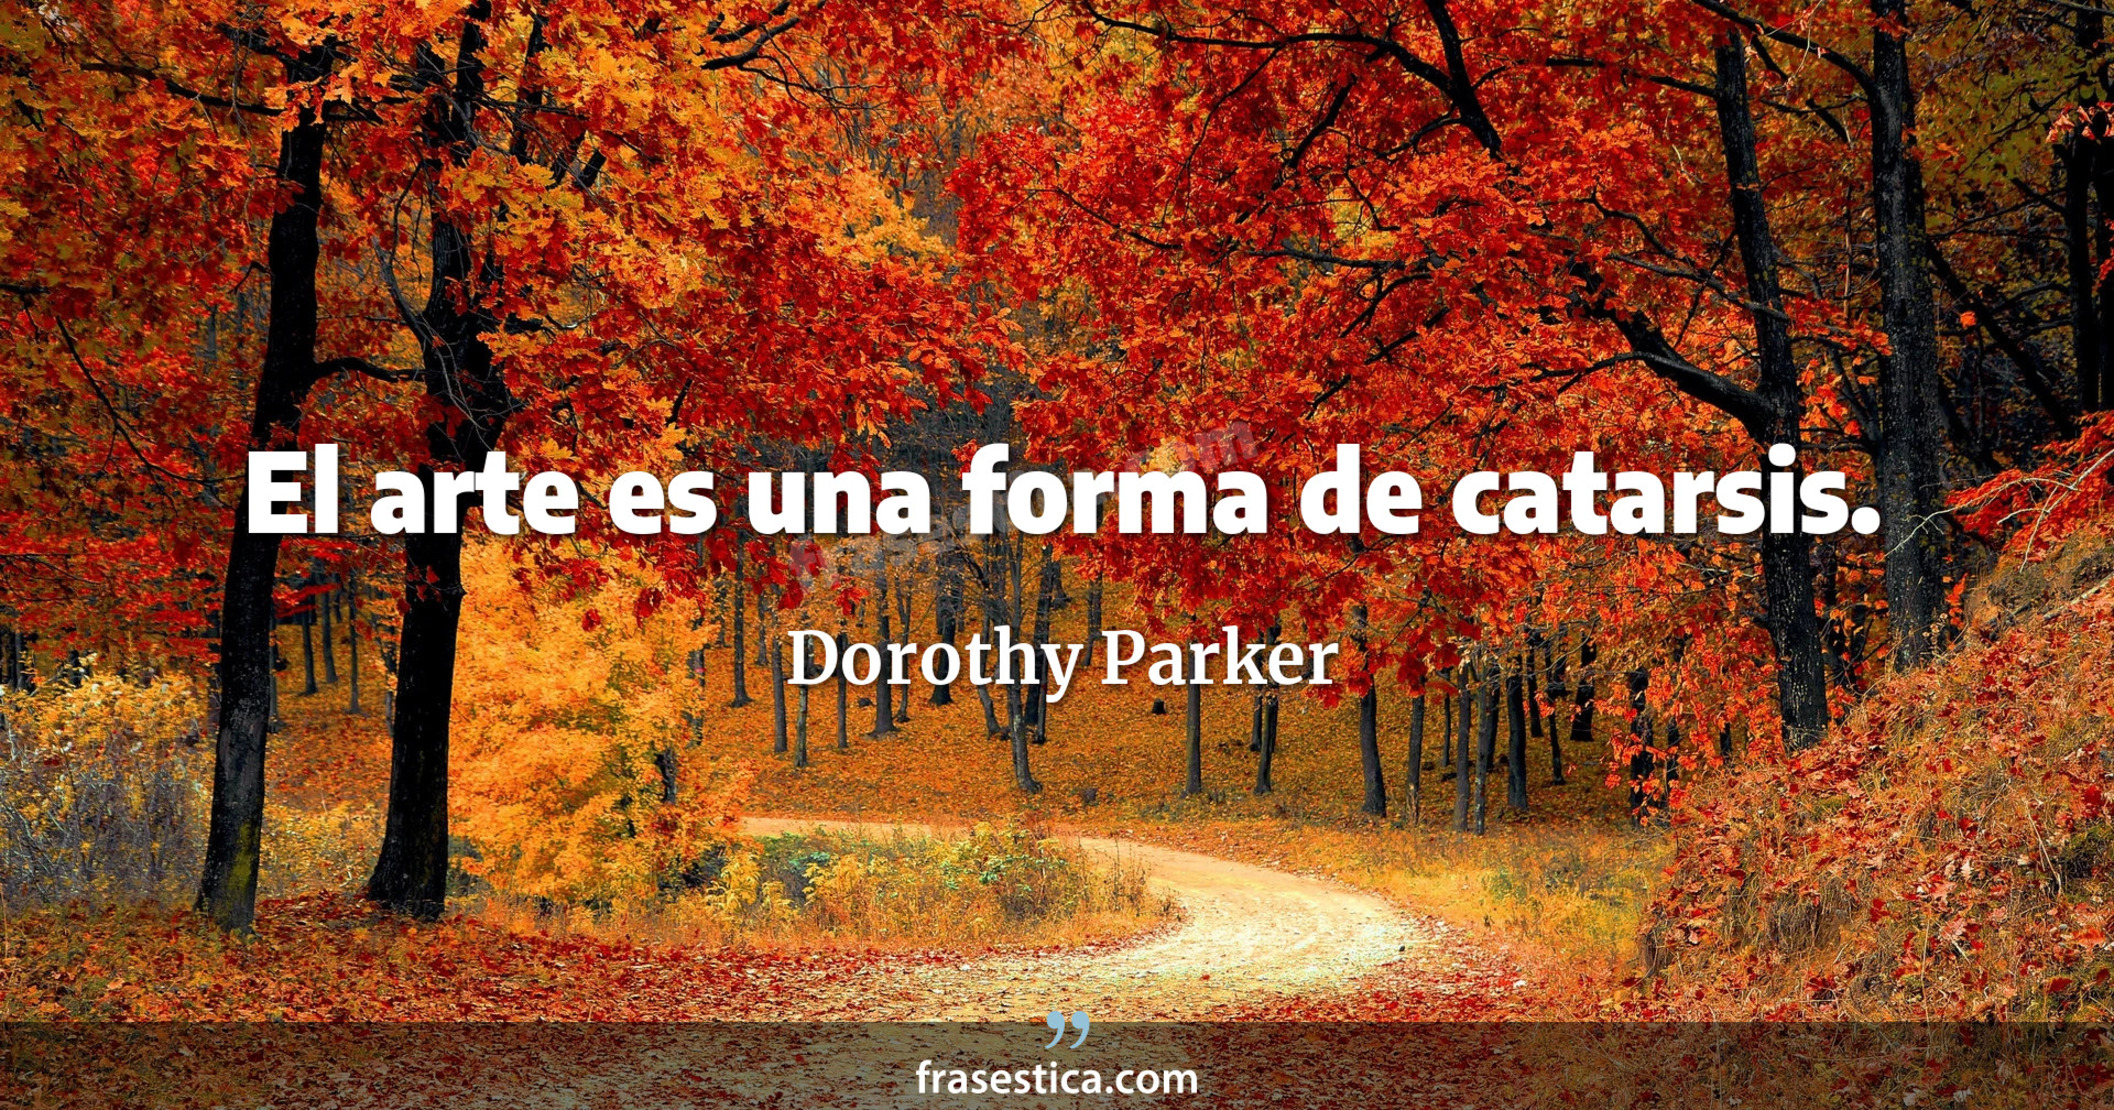 El arte es una forma de catarsis. - Dorothy Parker